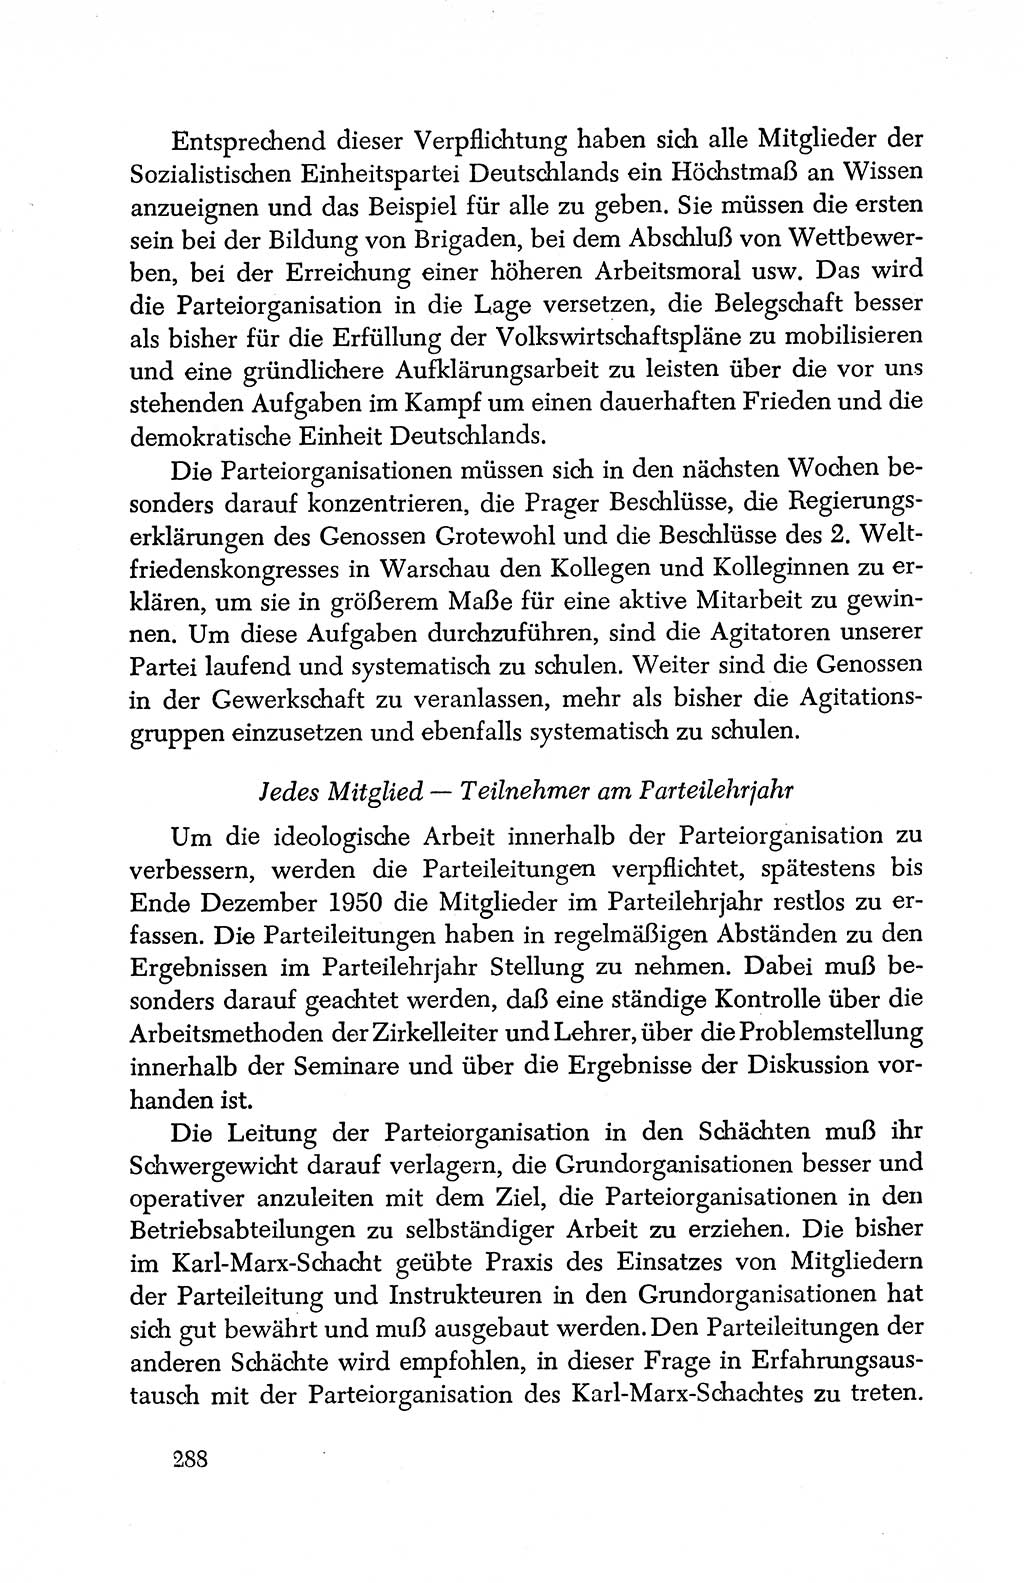 Dokumente der Sozialistischen Einheitspartei Deutschlands (SED) [Deutsche Demokratische Republik (DDR)] 1950-1952, Seite 288 (Dok. SED DDR 1950-1952, S. 288)